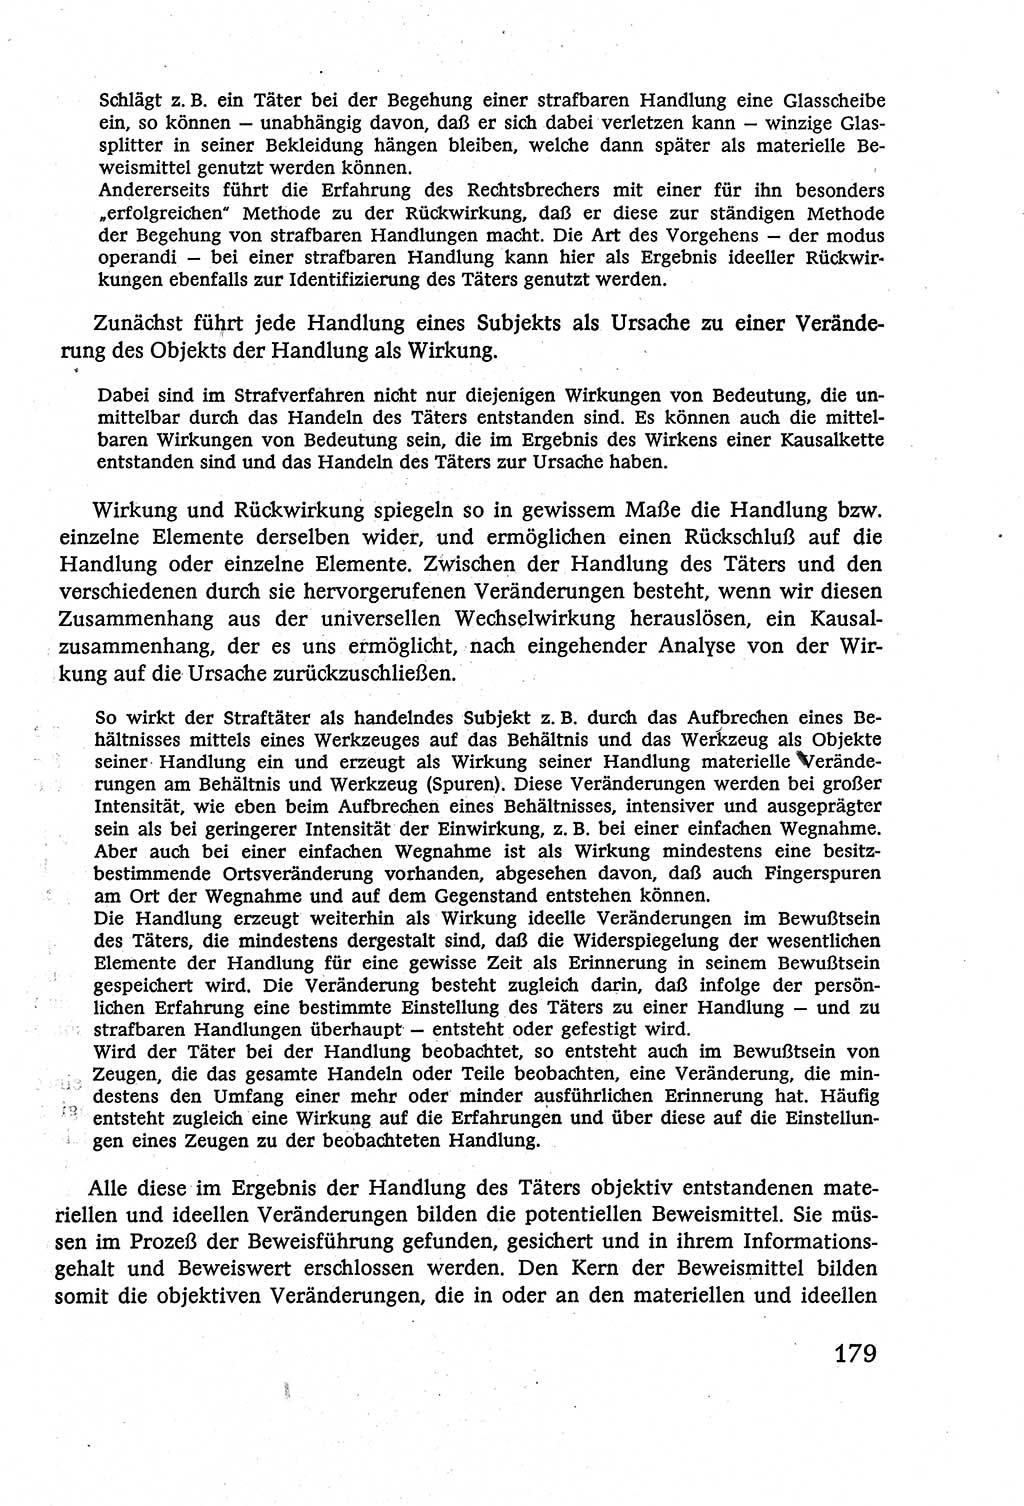 Strafverfahrensrecht [Deutsche Demokratische Republik (DDR)], Lehrbuch 1977, Seite 179 (Strafverf.-R. DDR Lb. 1977, S. 179)